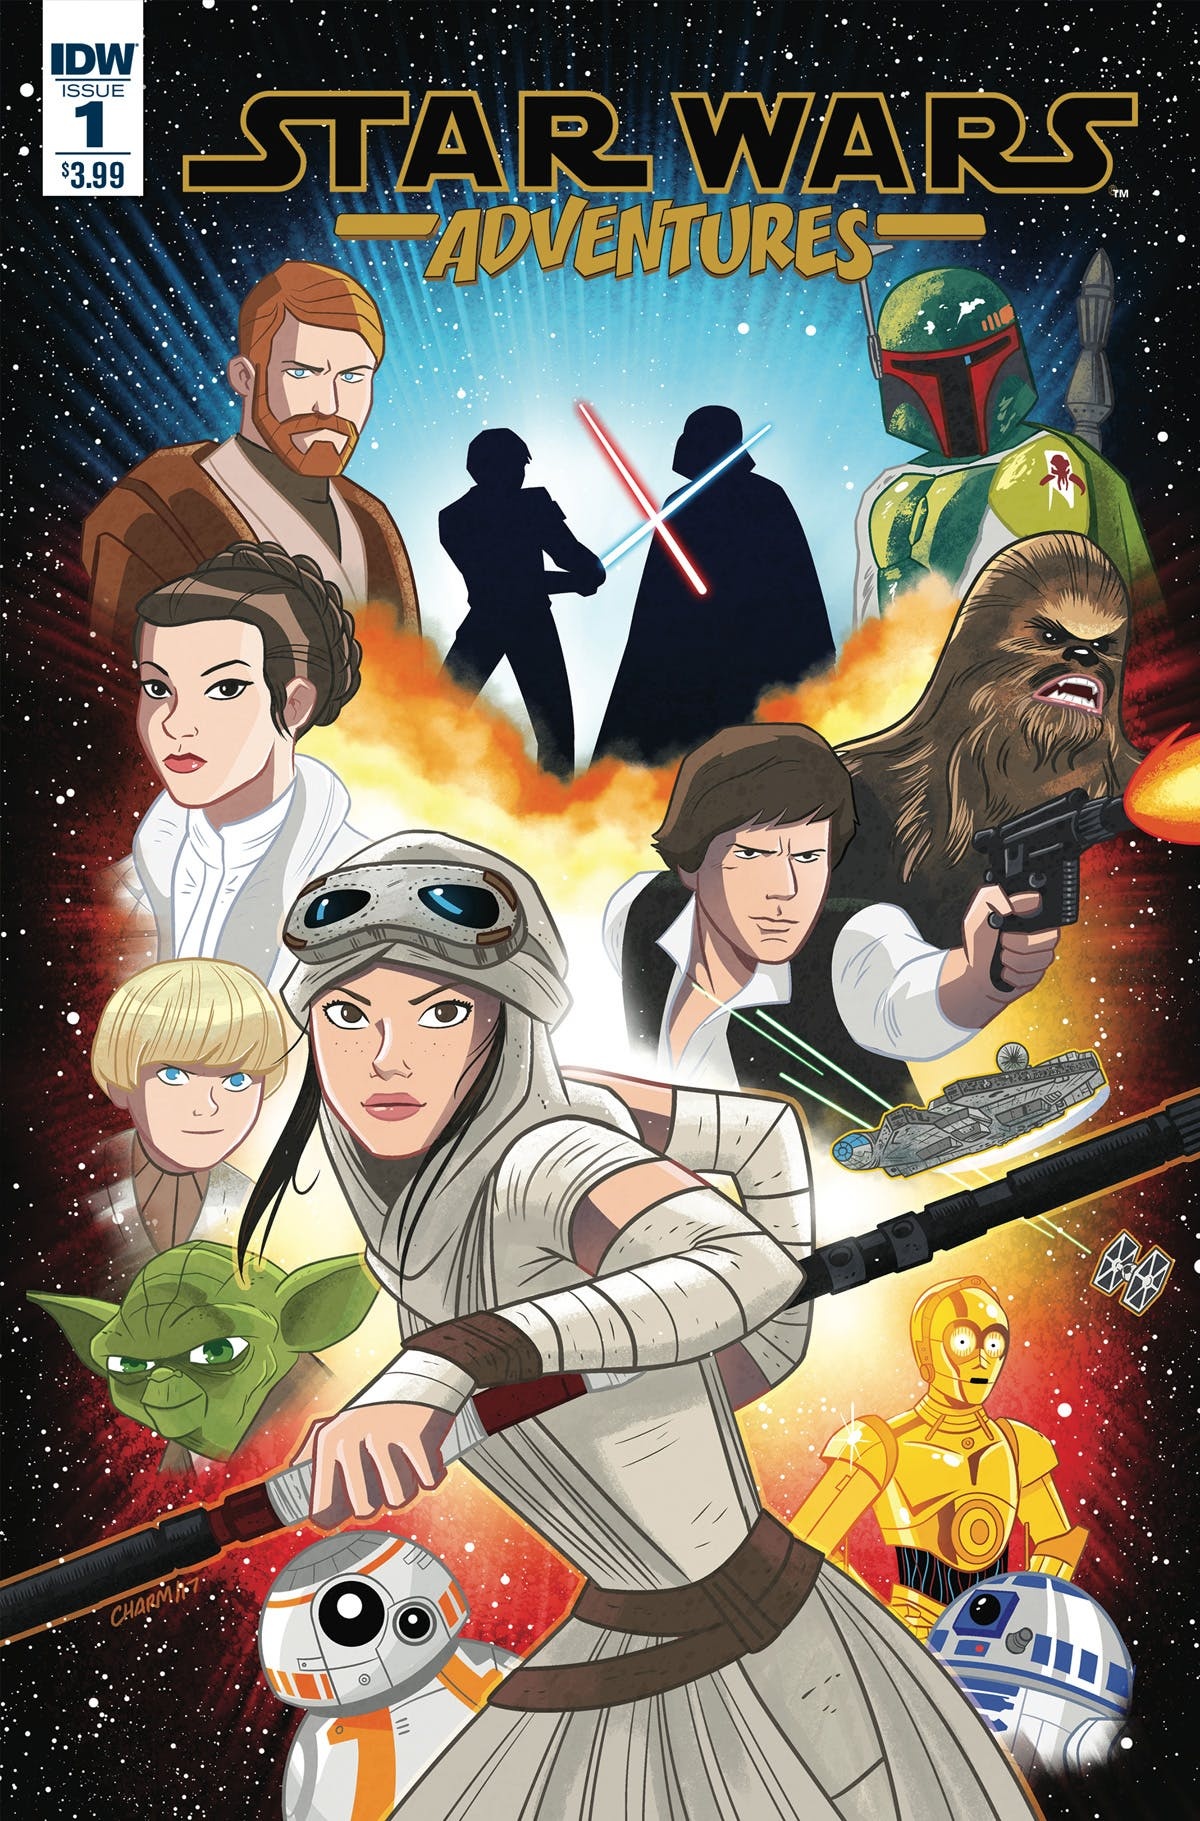 漫画《星球大战:历险记》第1集与第2集封面公布